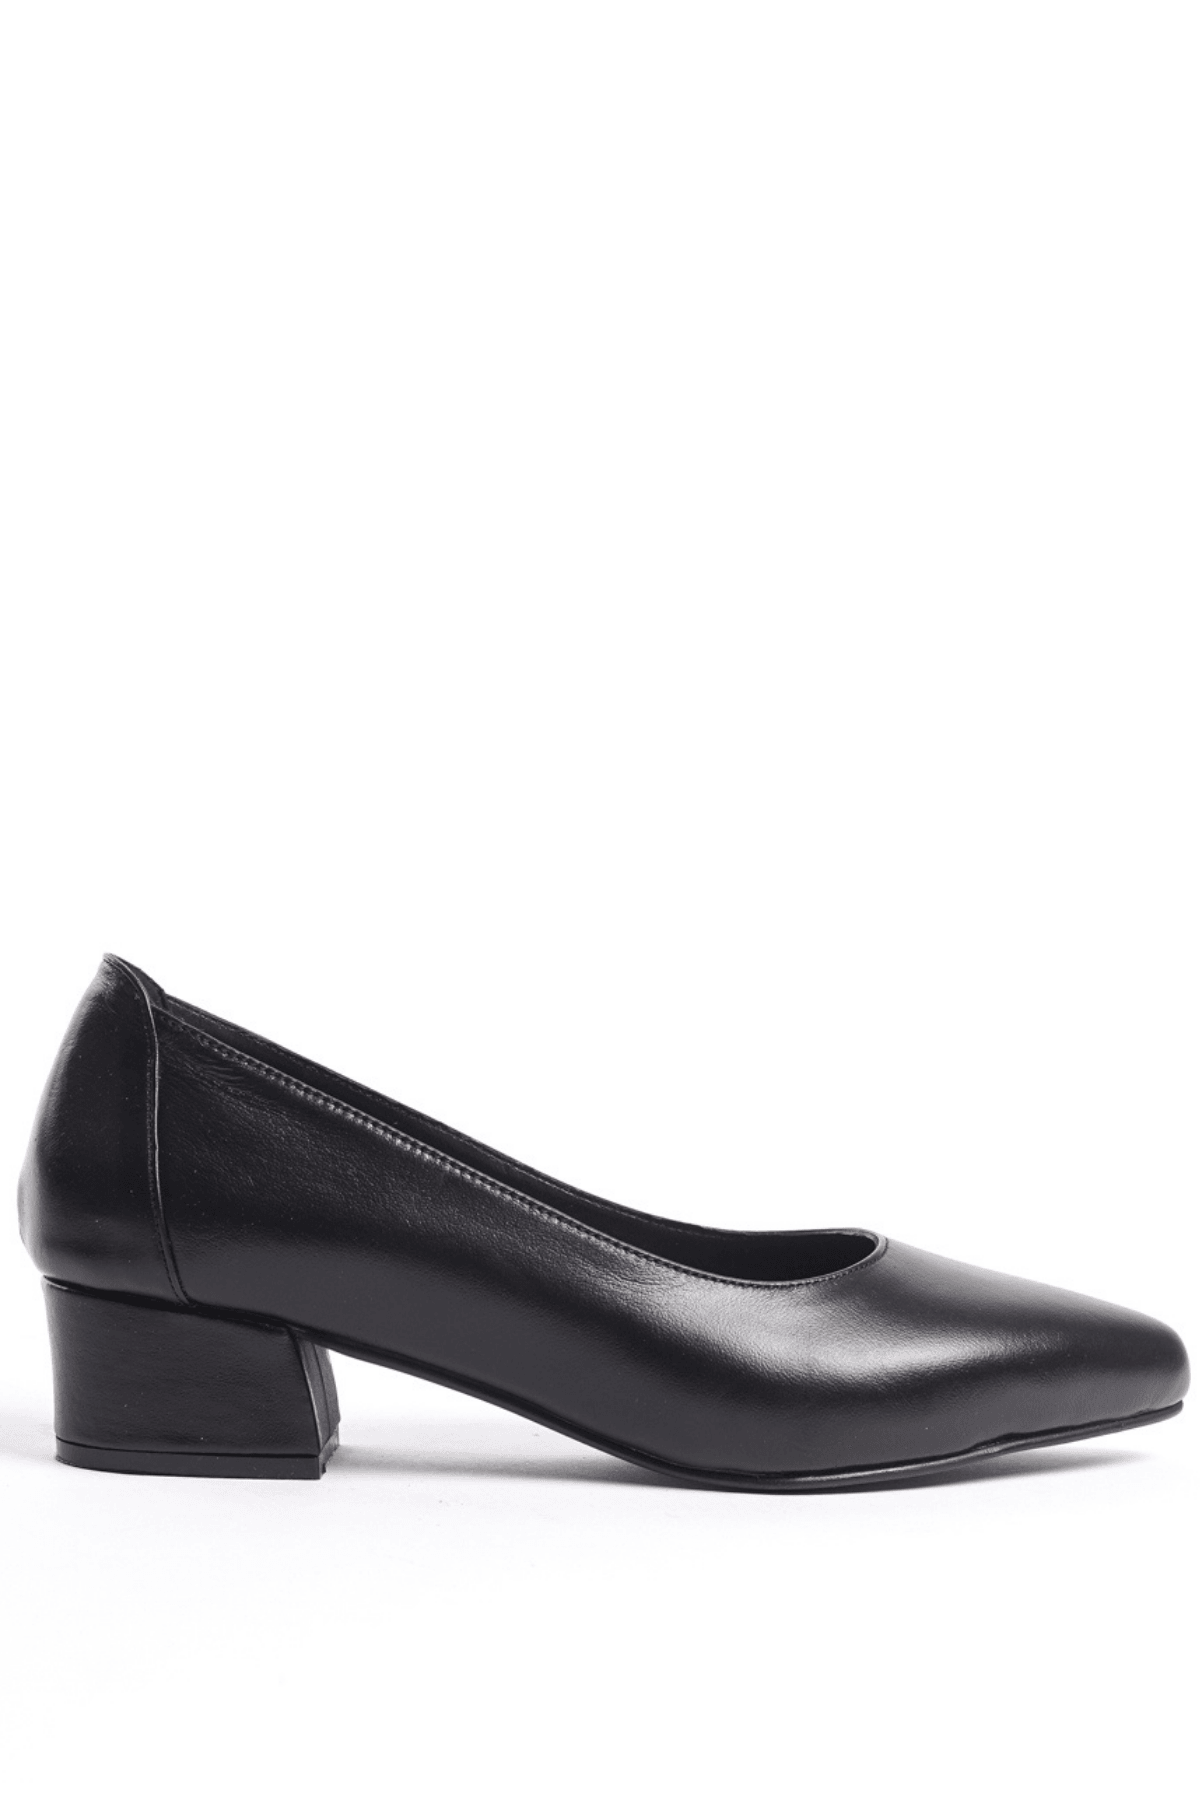 Kadın Hakiki Deri Günlük Topuklu Ayakkabı - Siyah